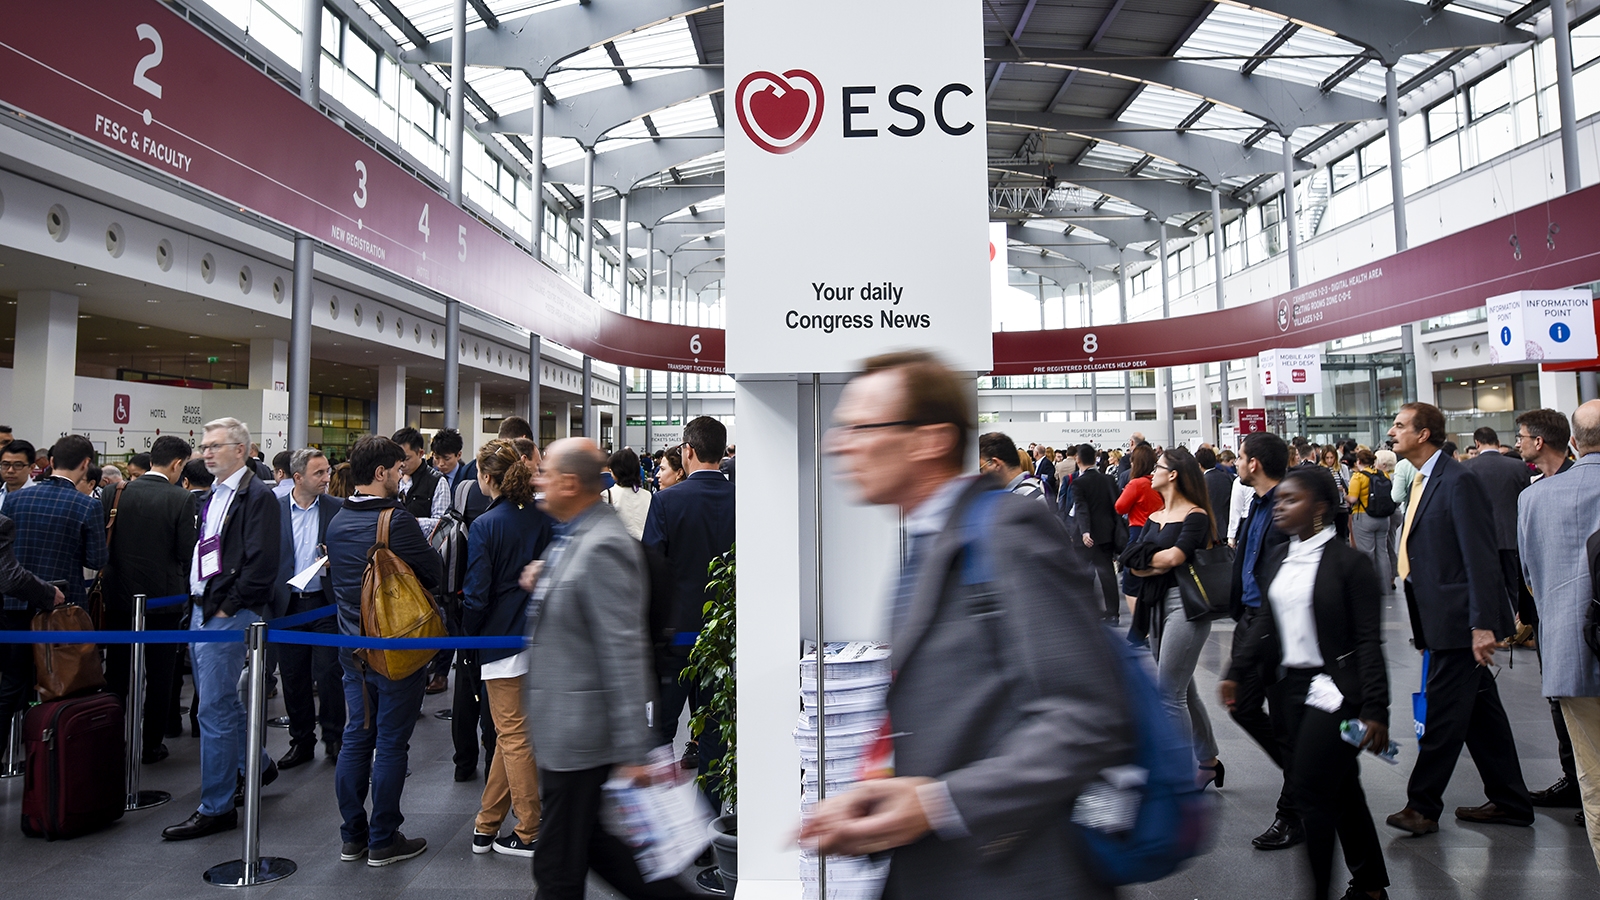 Instantes fotográficos #2: ESC 2018 é palco da internacionalização da Cardiologia portuguesa